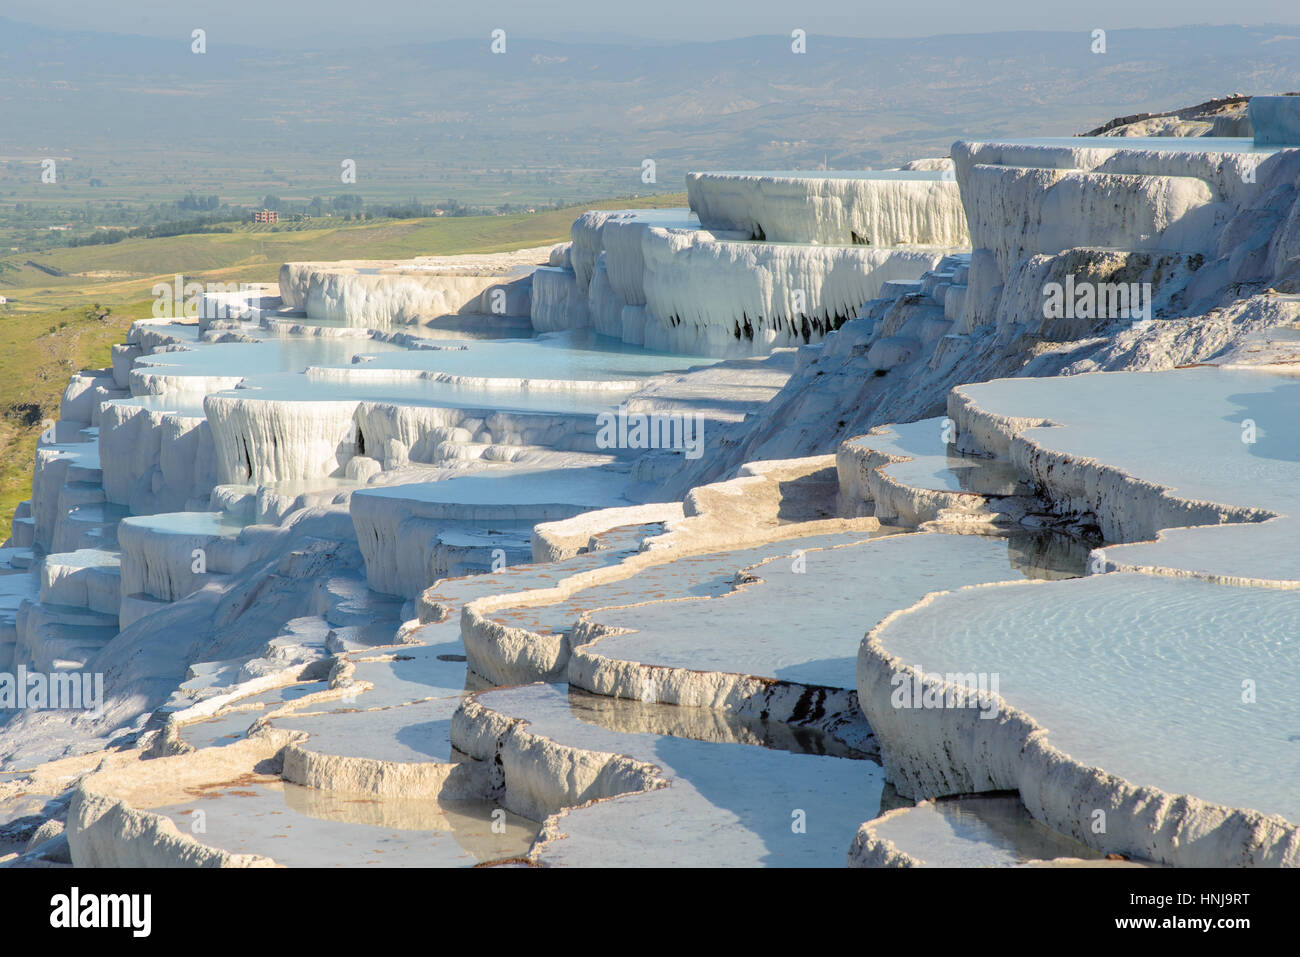 Le cadre enchanteur de piscines Pamukkale en Turquie. Les sources chaudes de Pamukkale contient des terrasses Travertins, et de minéraux carbonatés laissées par l'écoulement de l'eau. Banque D'Images